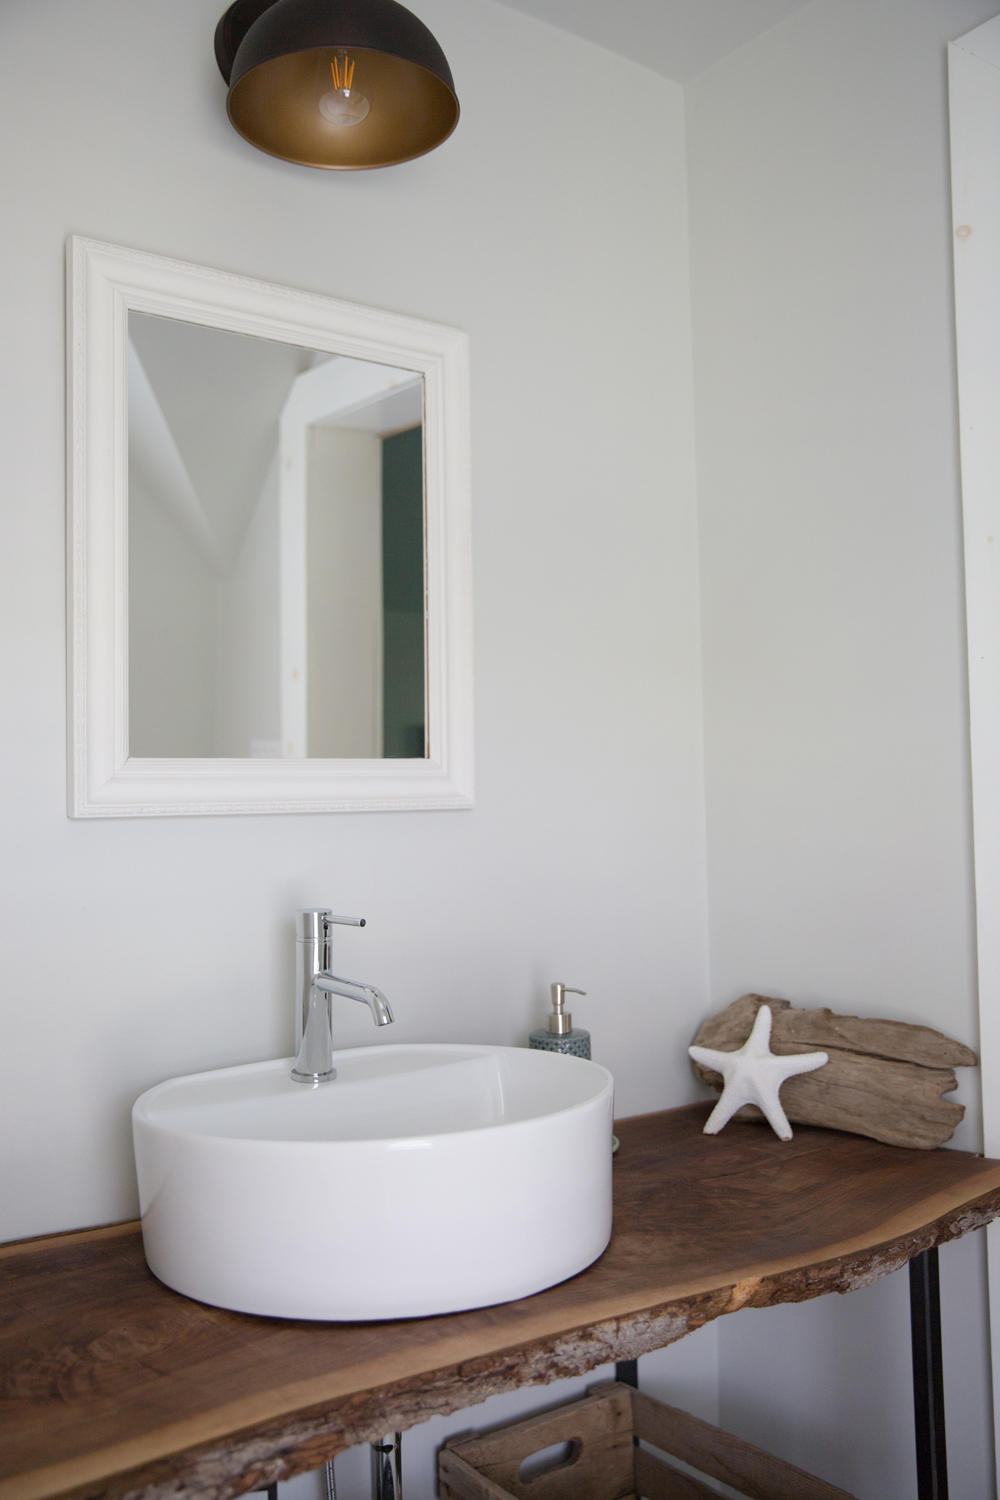 Rustic wood bathroom vanity with white cylinder sink